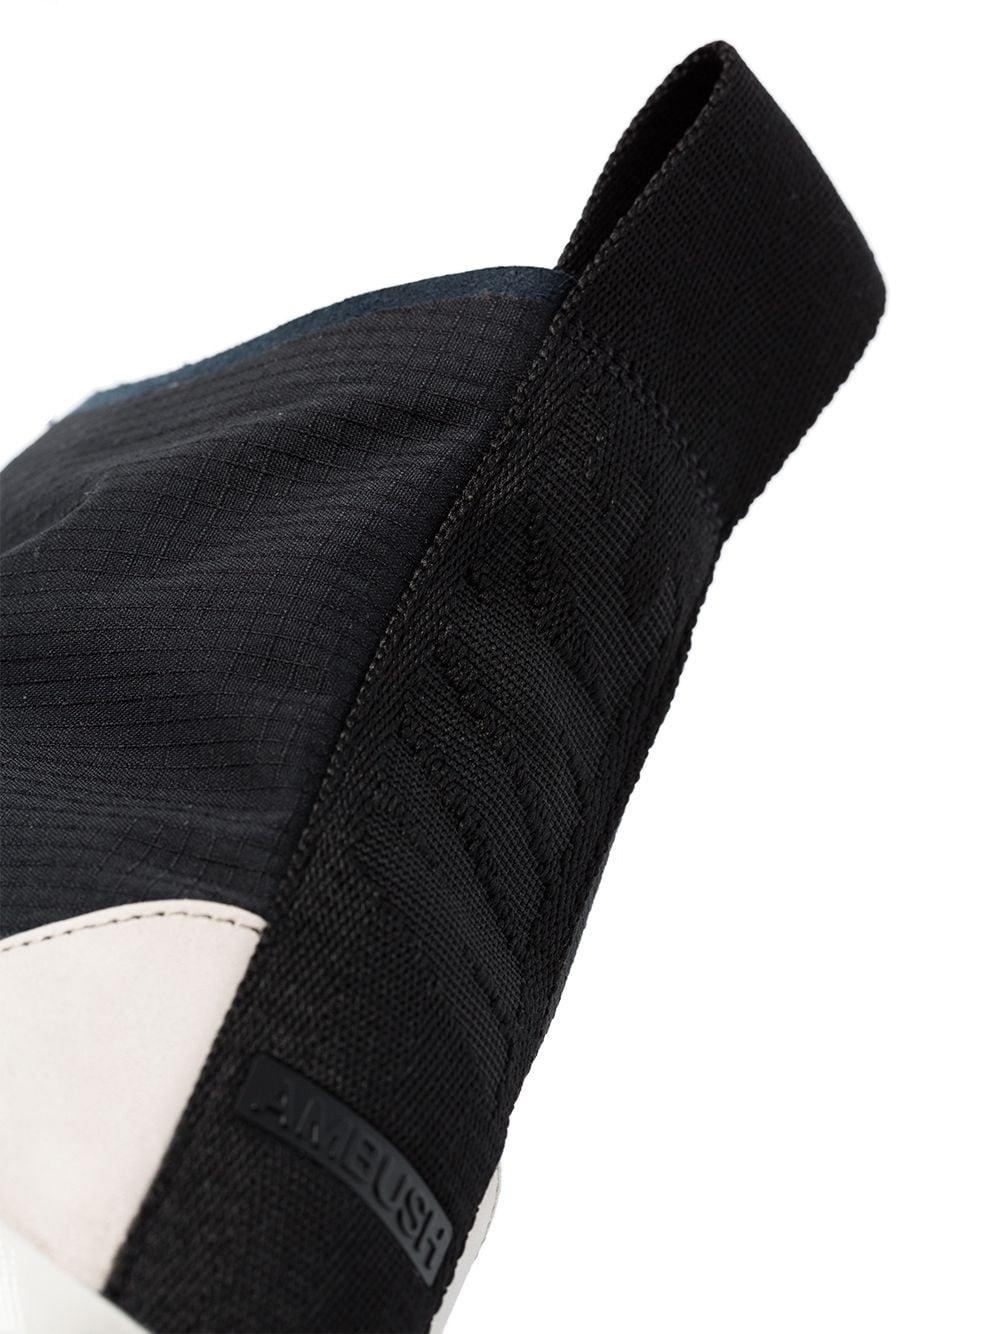 Zapatillas altas Air Max 180 de x Ambush Nike de Tejido sintético de color  Negro para hombre | Lyst